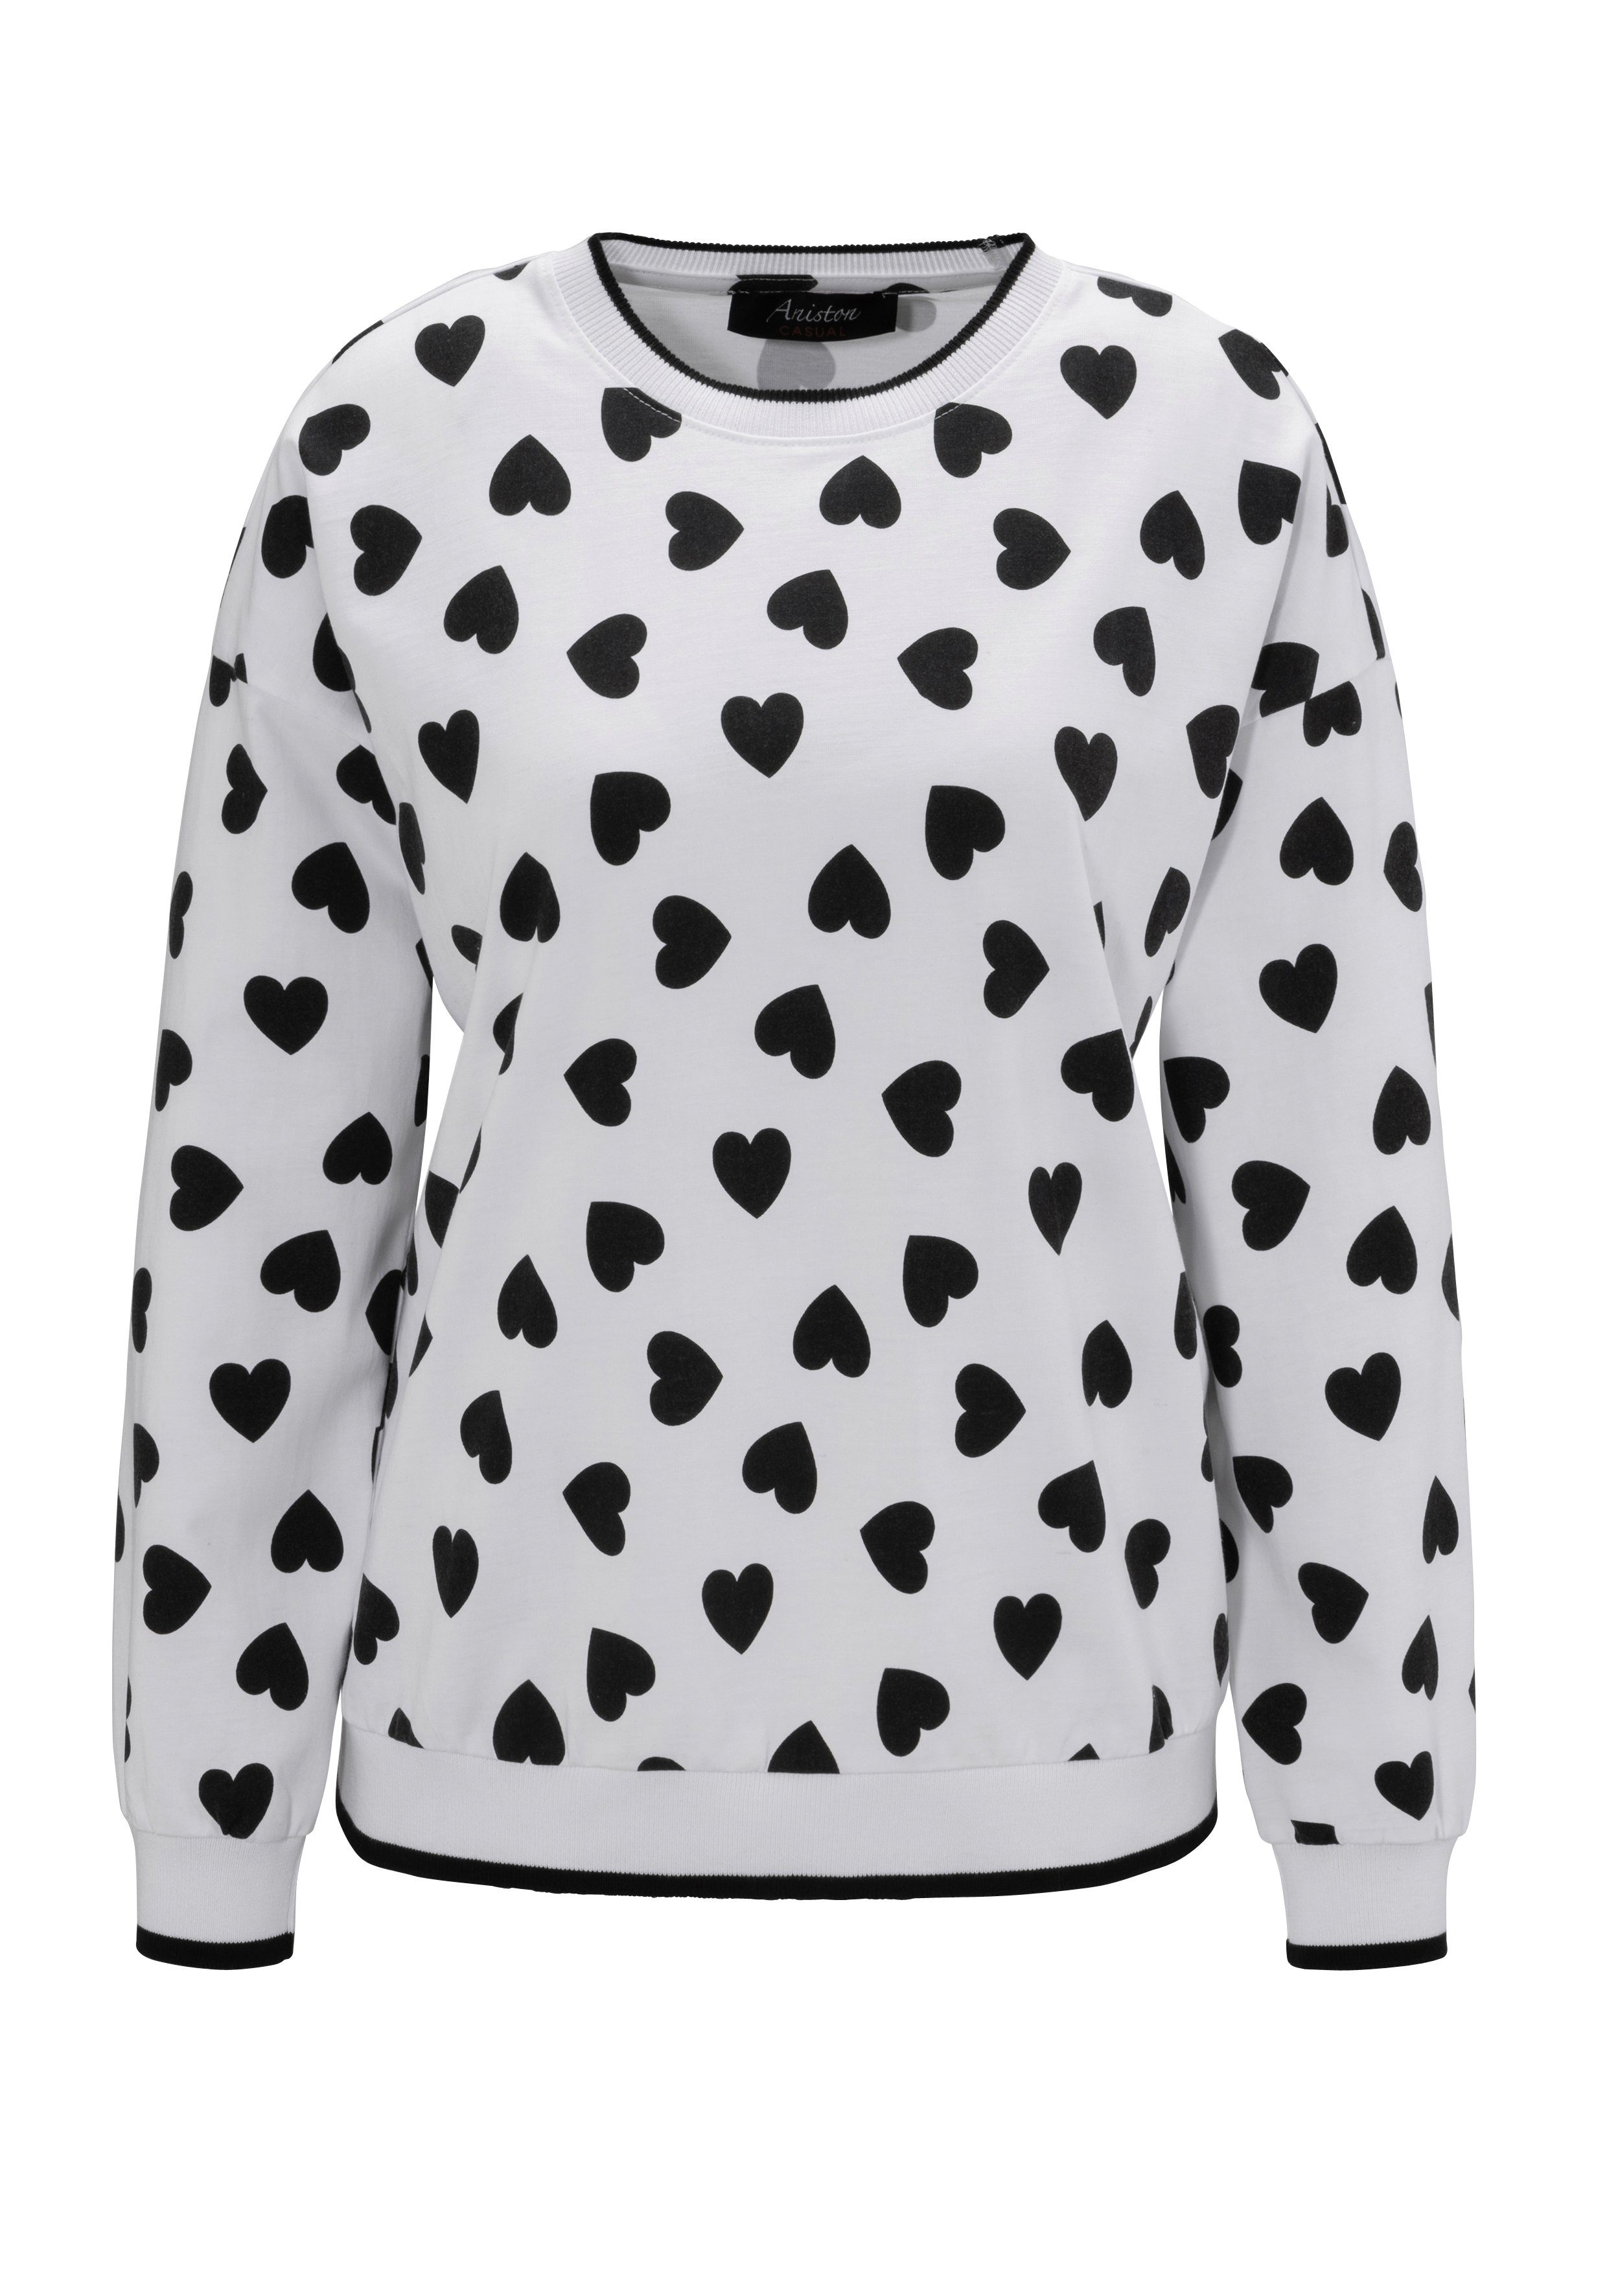 Aniston CASUAL Sweatshirt mit KOLLEKTION Herzchen NEUE bedruckt - weiß-scharz